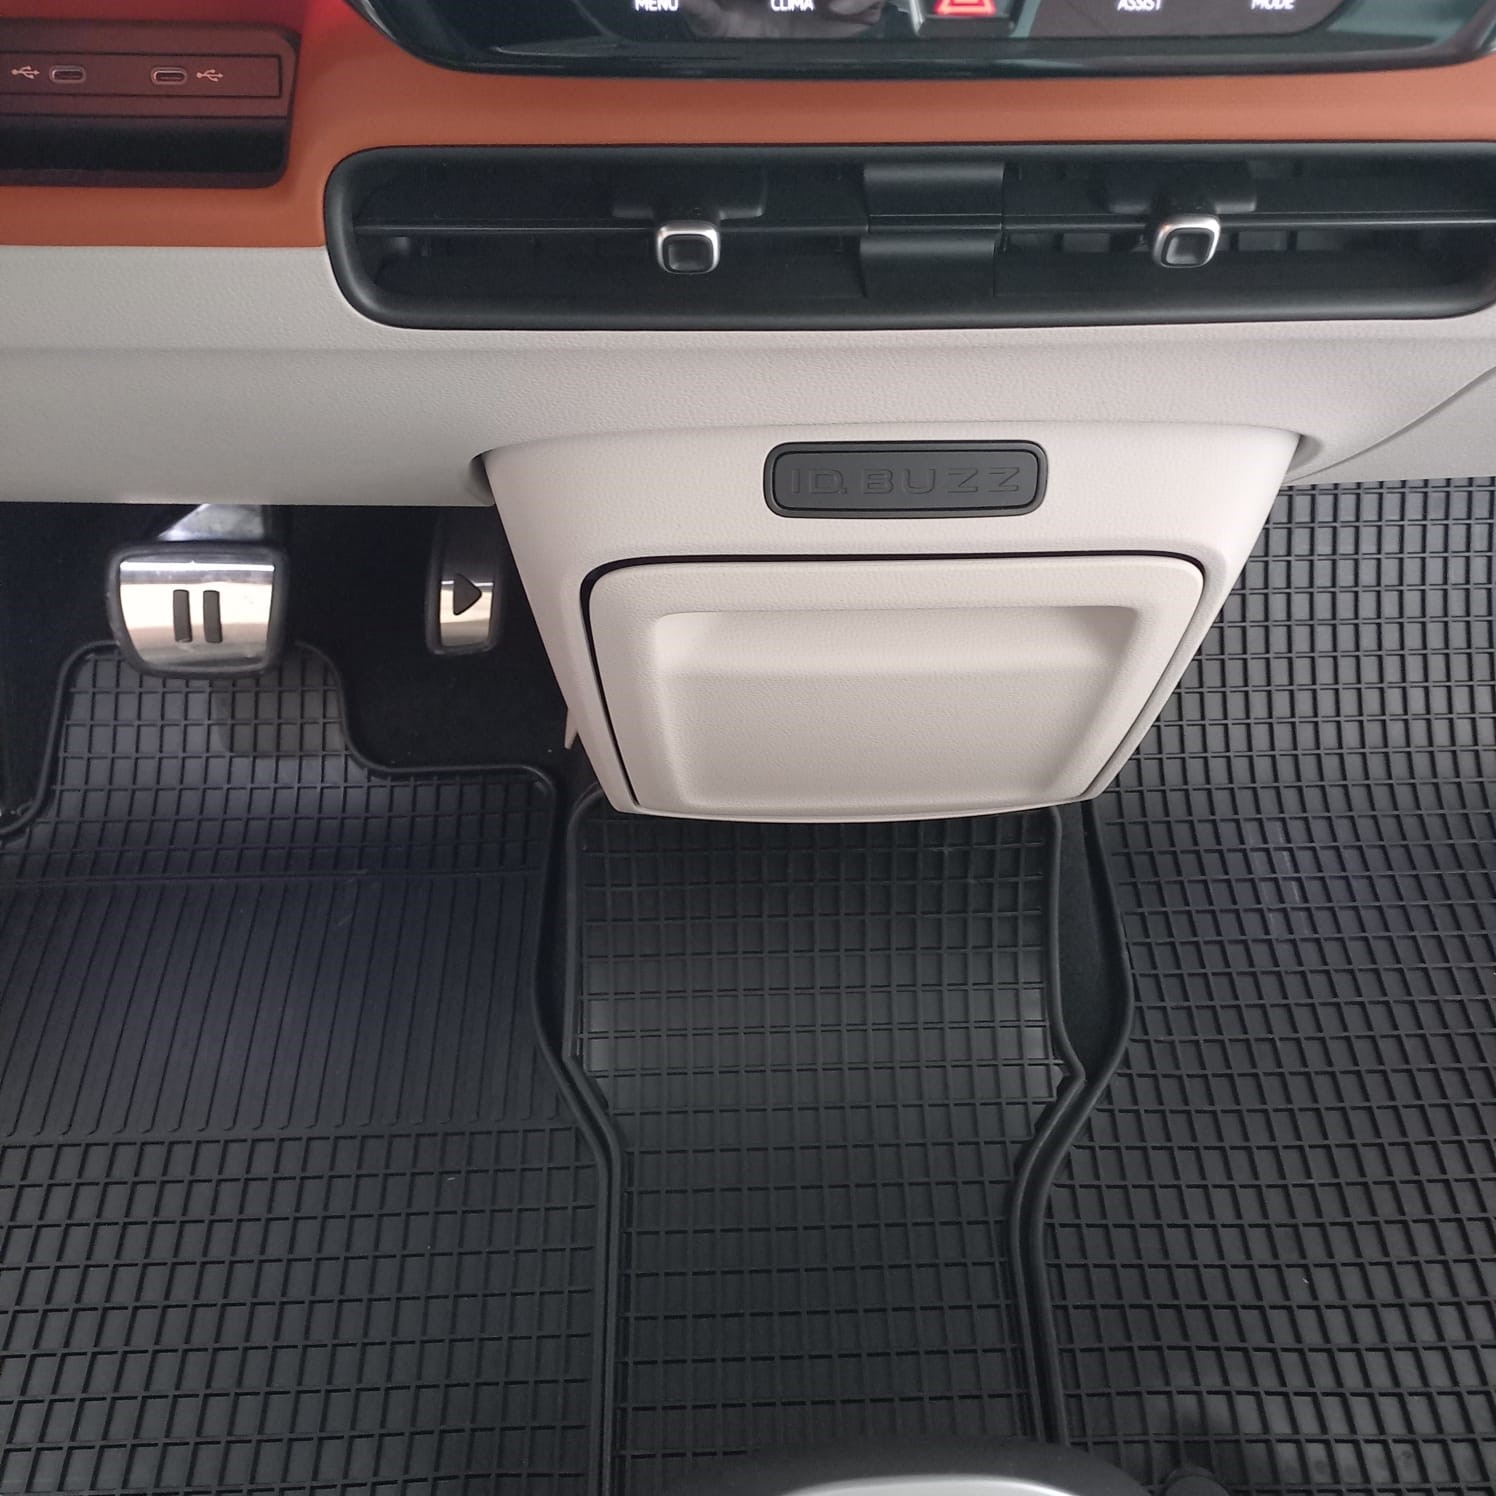 Fußmatten für VW ID. Buzz - Auto Ausstattung Shop